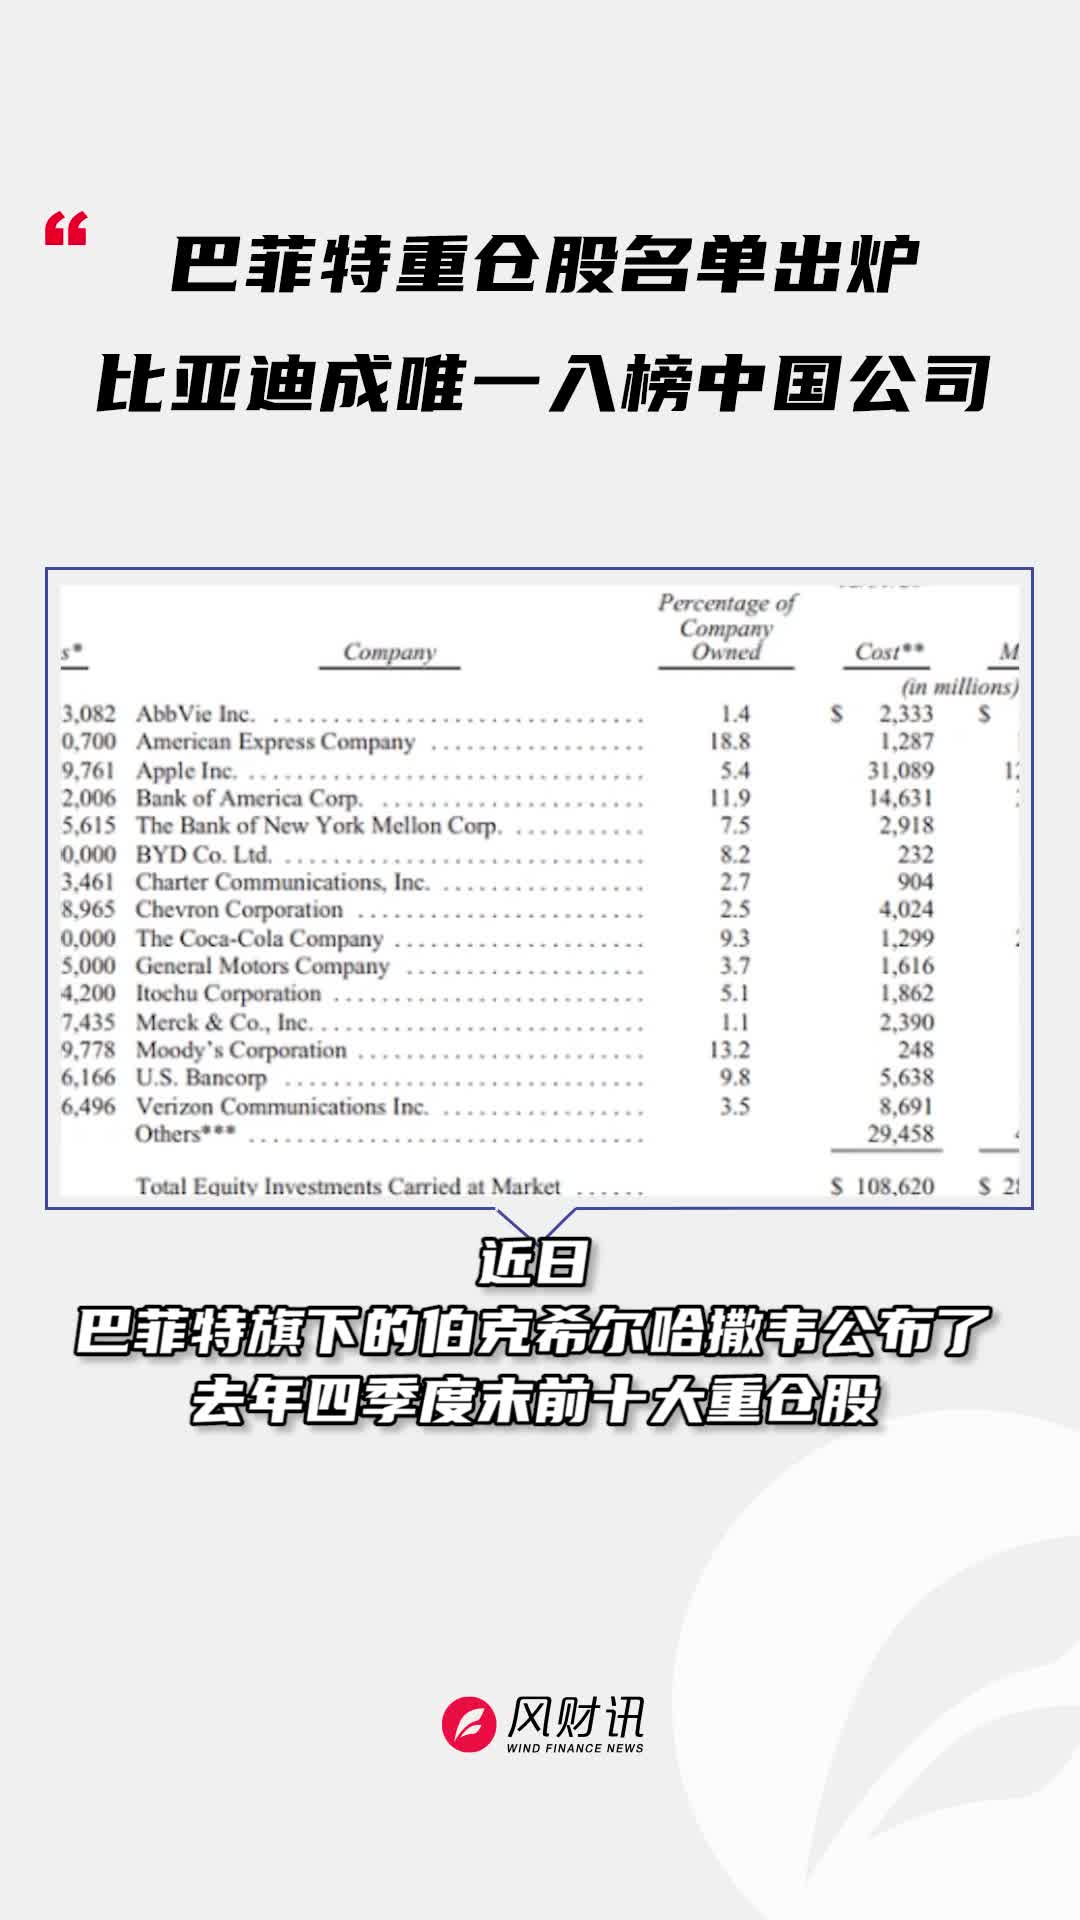 巴菲特重仓股名单出炉 比亚迪成唯一入榜中国公司